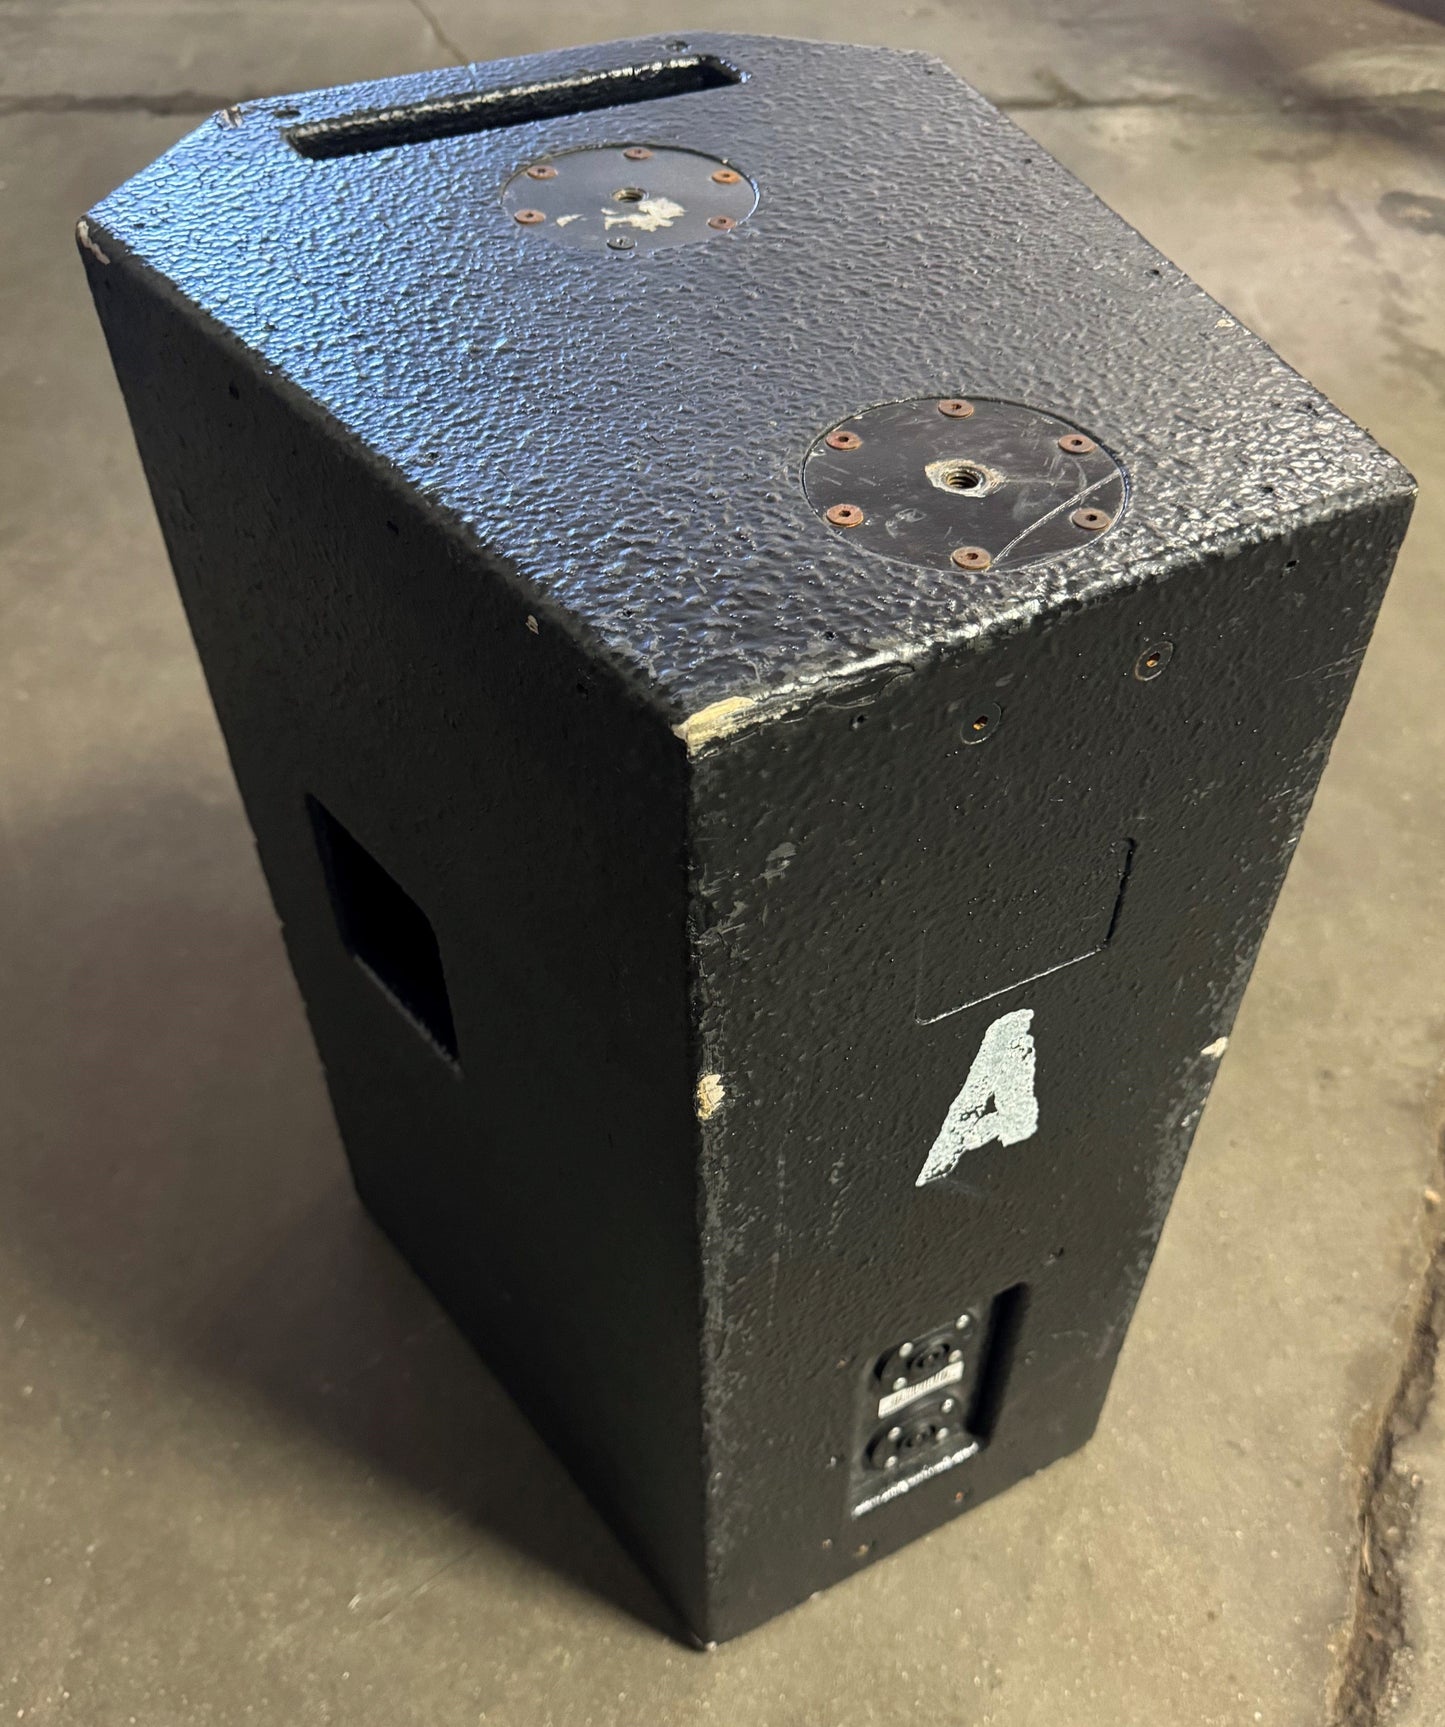 Apogee AE-5 Arrayable Loudspeaker System